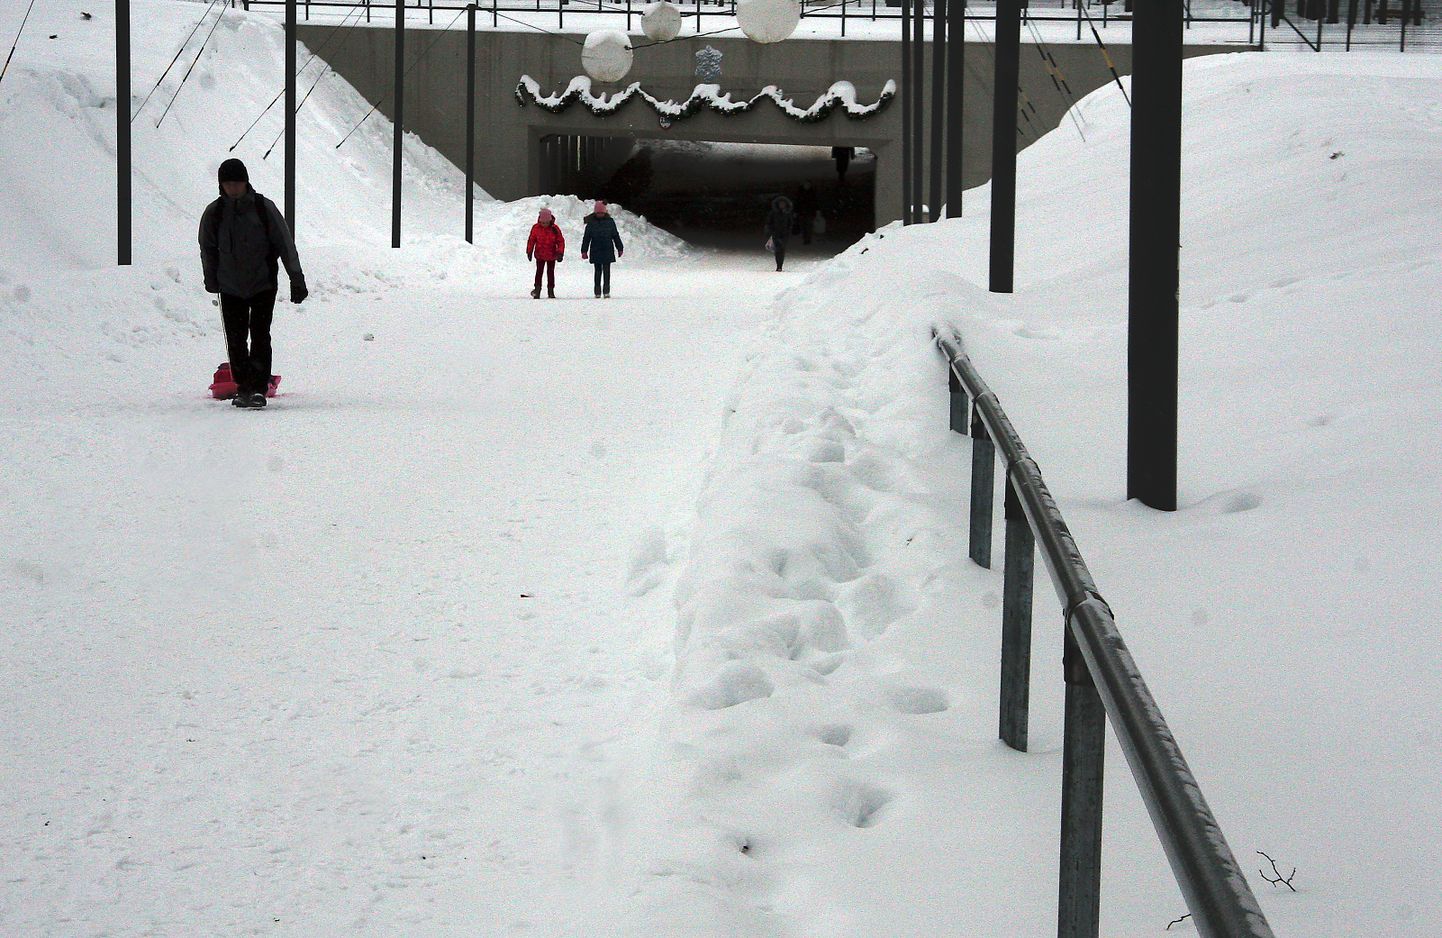 Jõhvi promenaadil asuva jalakäijate tunneli juures on jalgteed puhastatud nii, et käsipuu on kohati lumme uppunud ning lumevall takistab selle kasutamist.